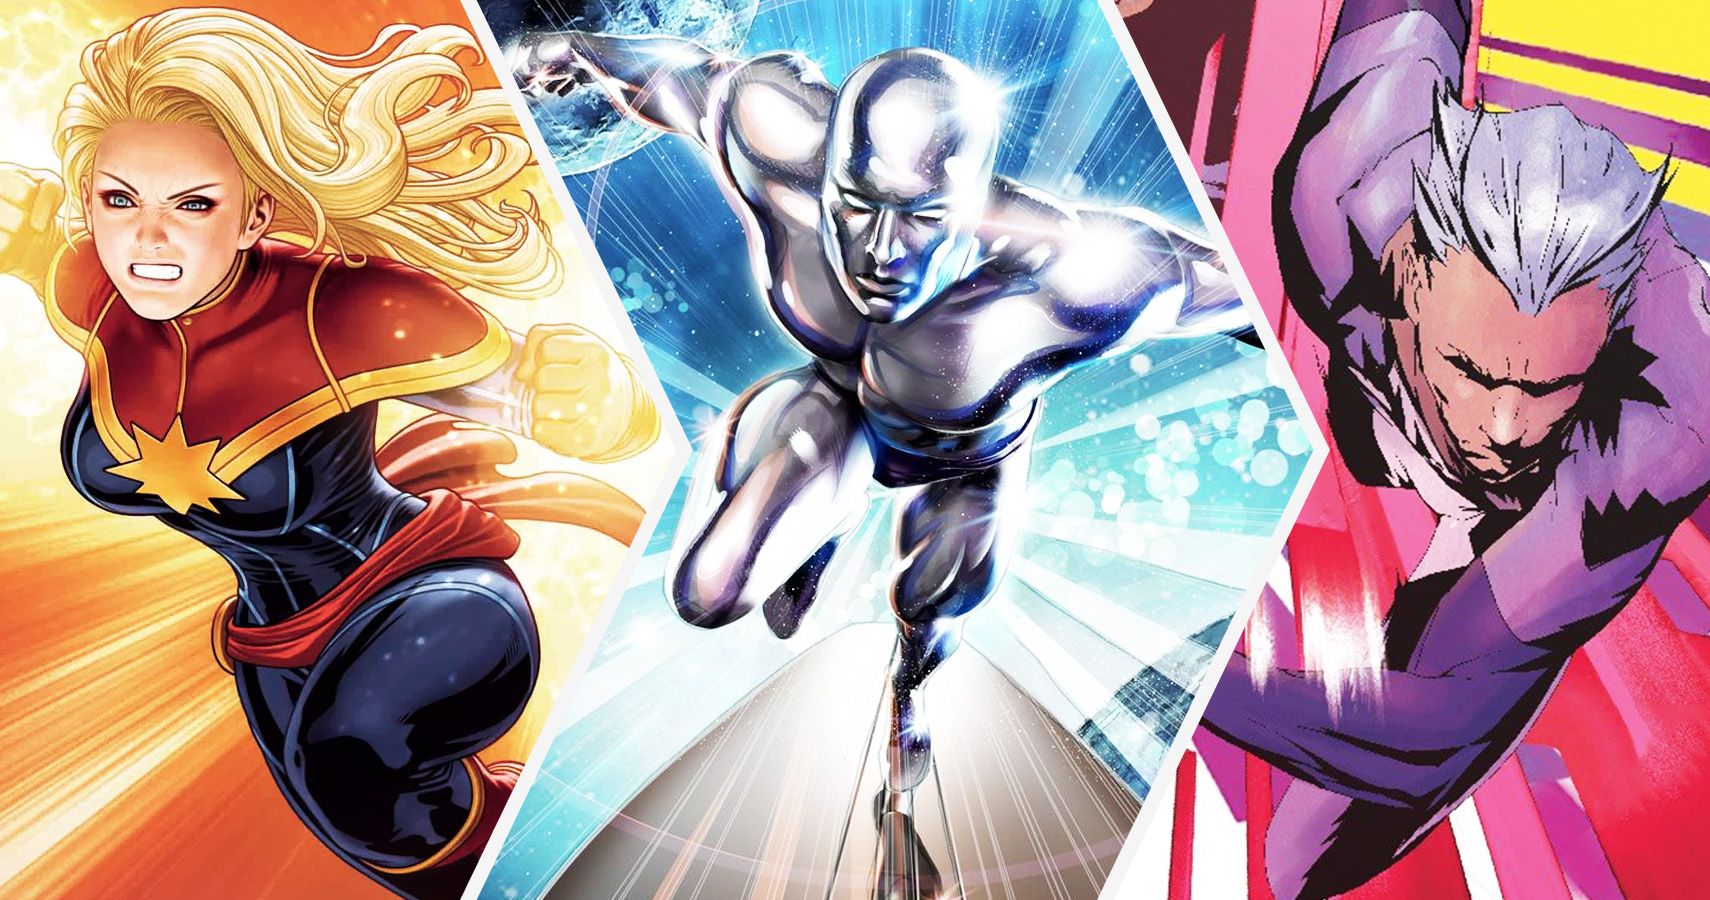 Who is fastest Marvel superhero?